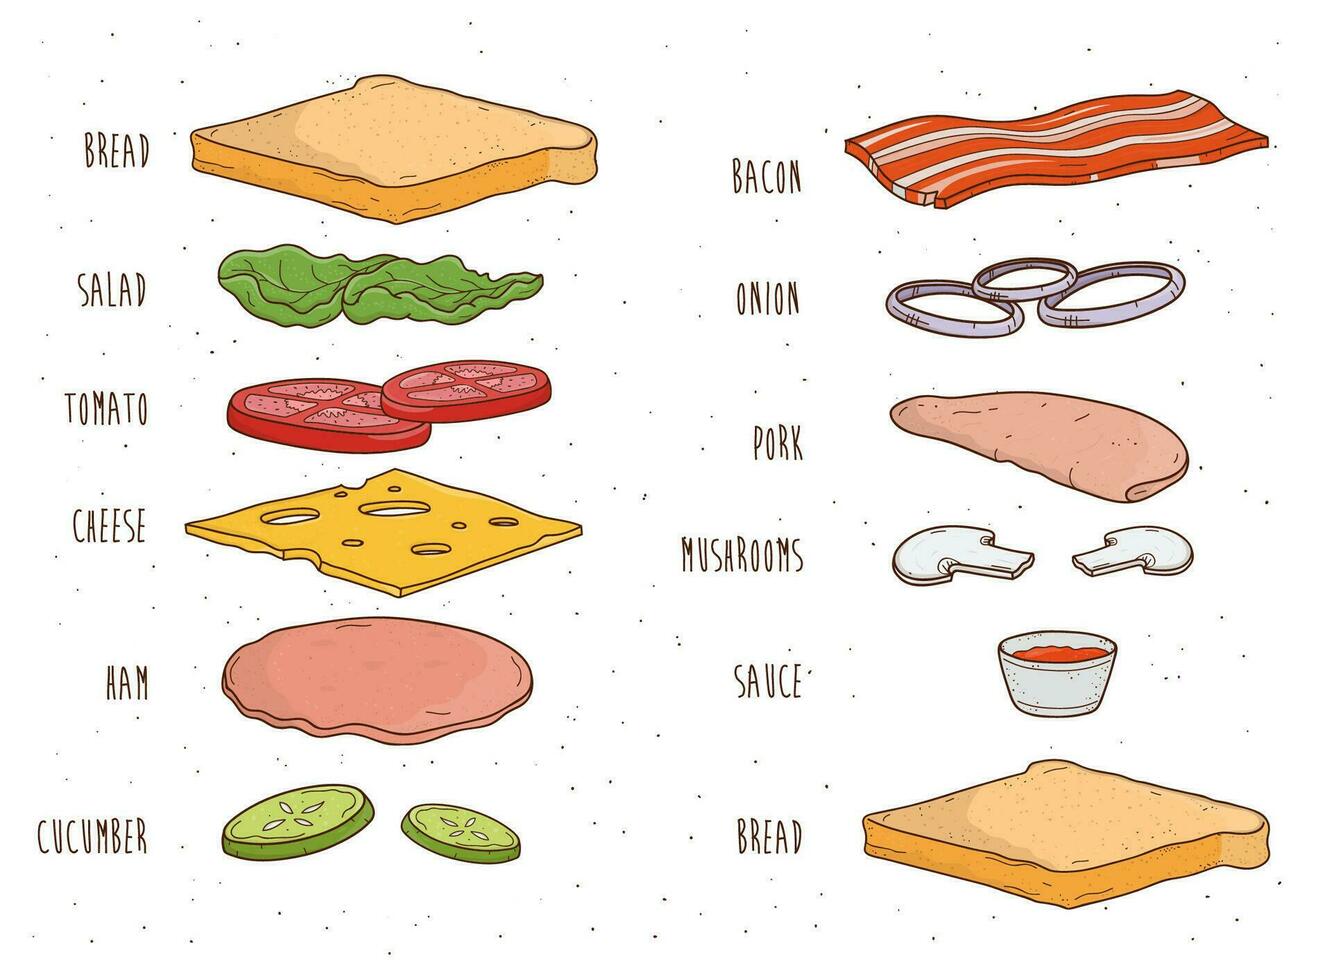 Sandwich ingredienti separatamente. pane, insalata, pomodoro, formaggio, salsa, funghi, Bacon, cipolla. colorato mano disegnato vettore illustrazione.